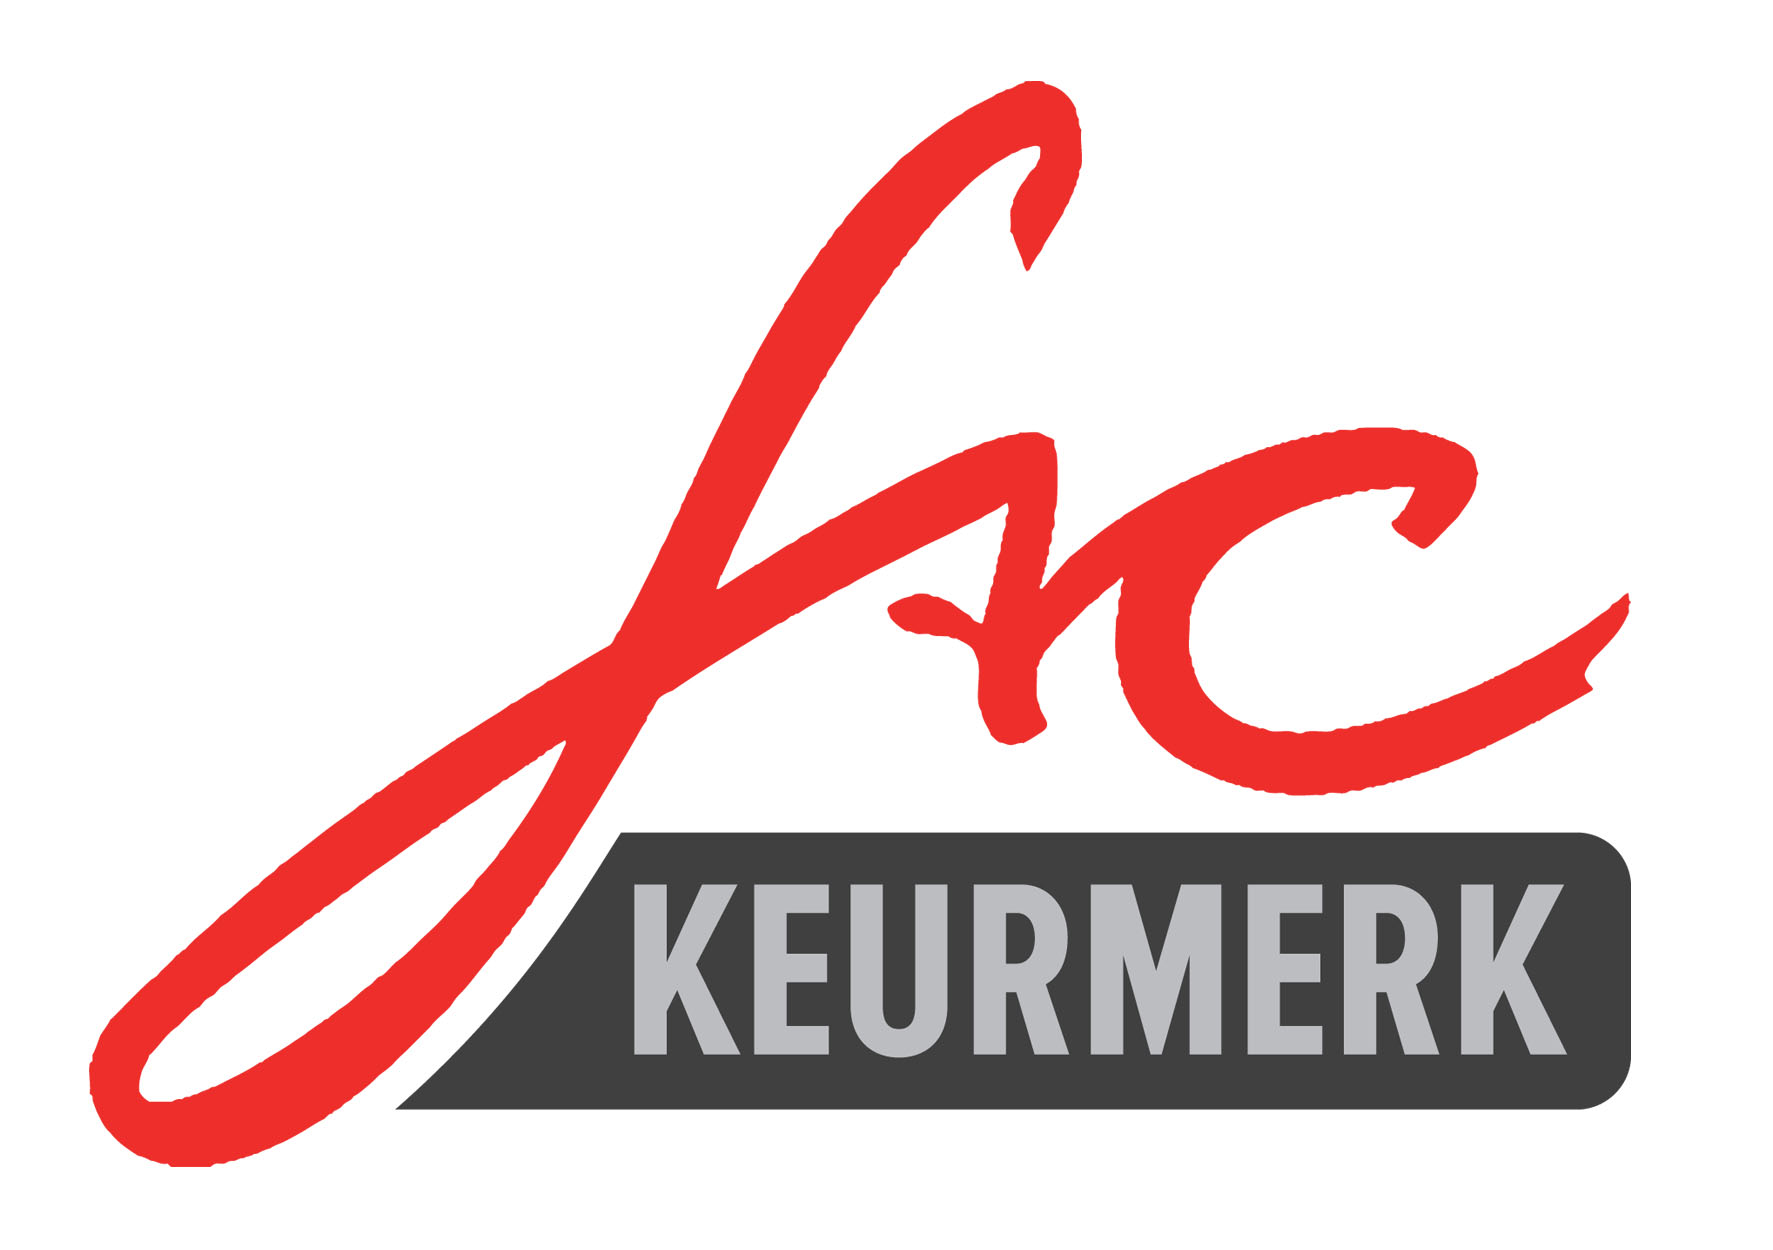 FAC logo